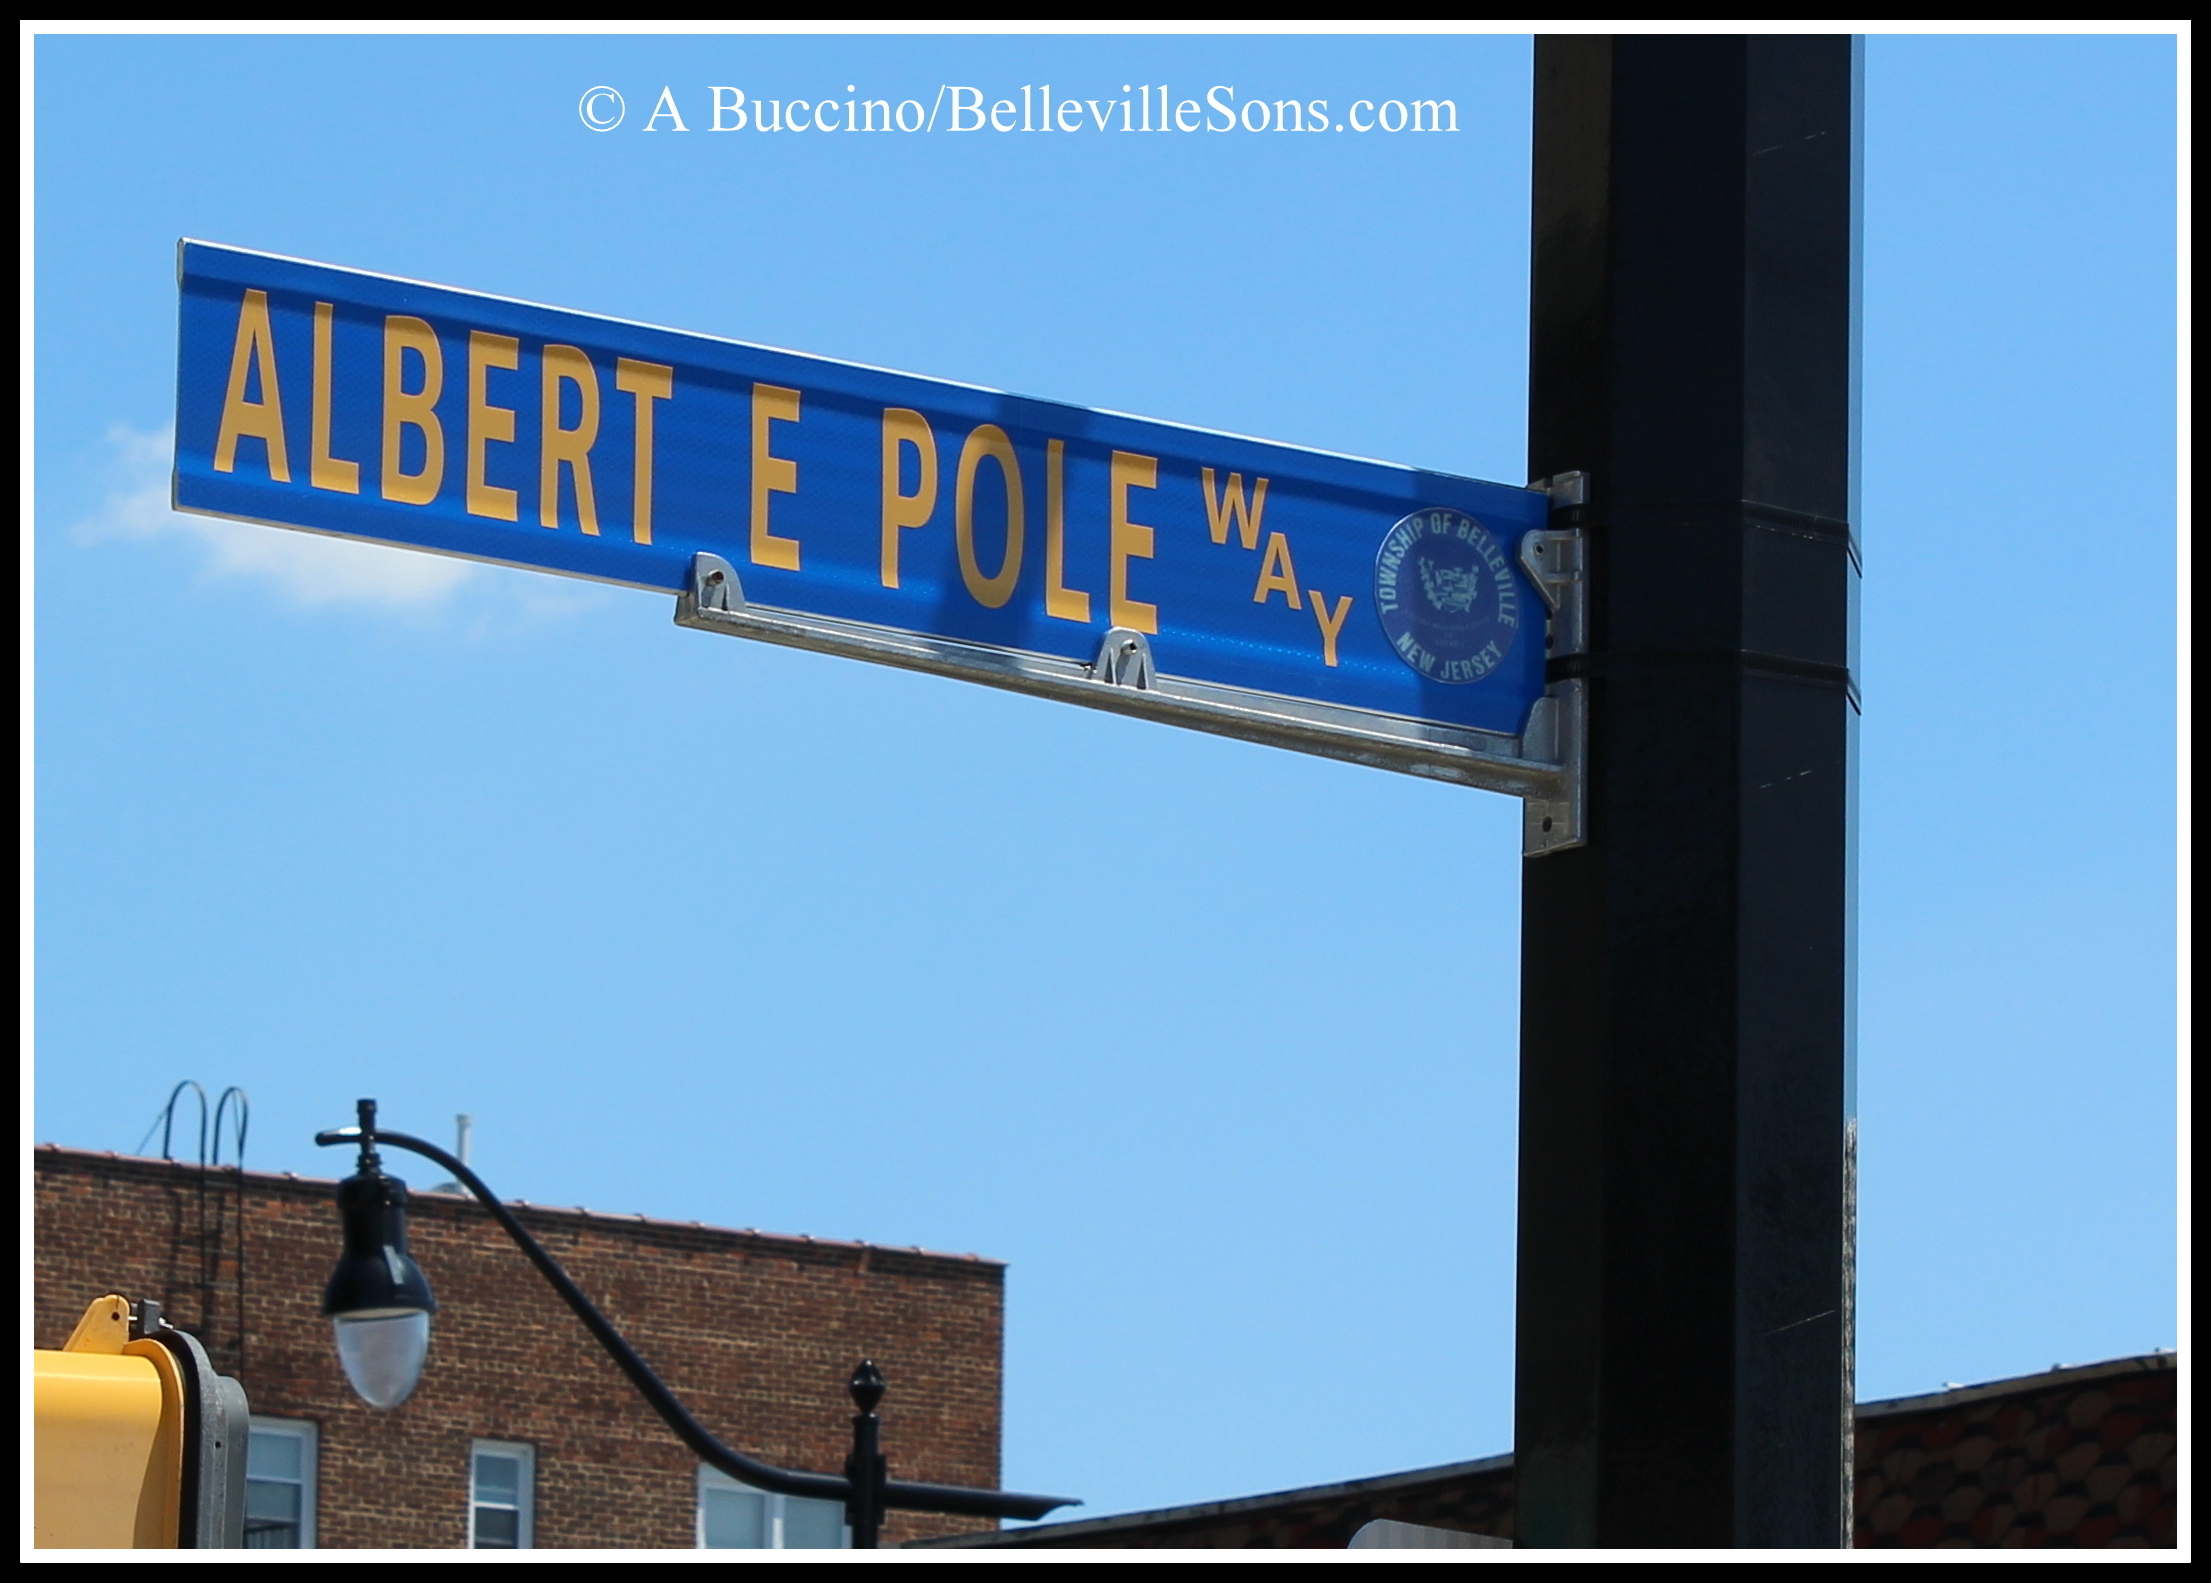 Albert Pole Way, Belleville, N.J.